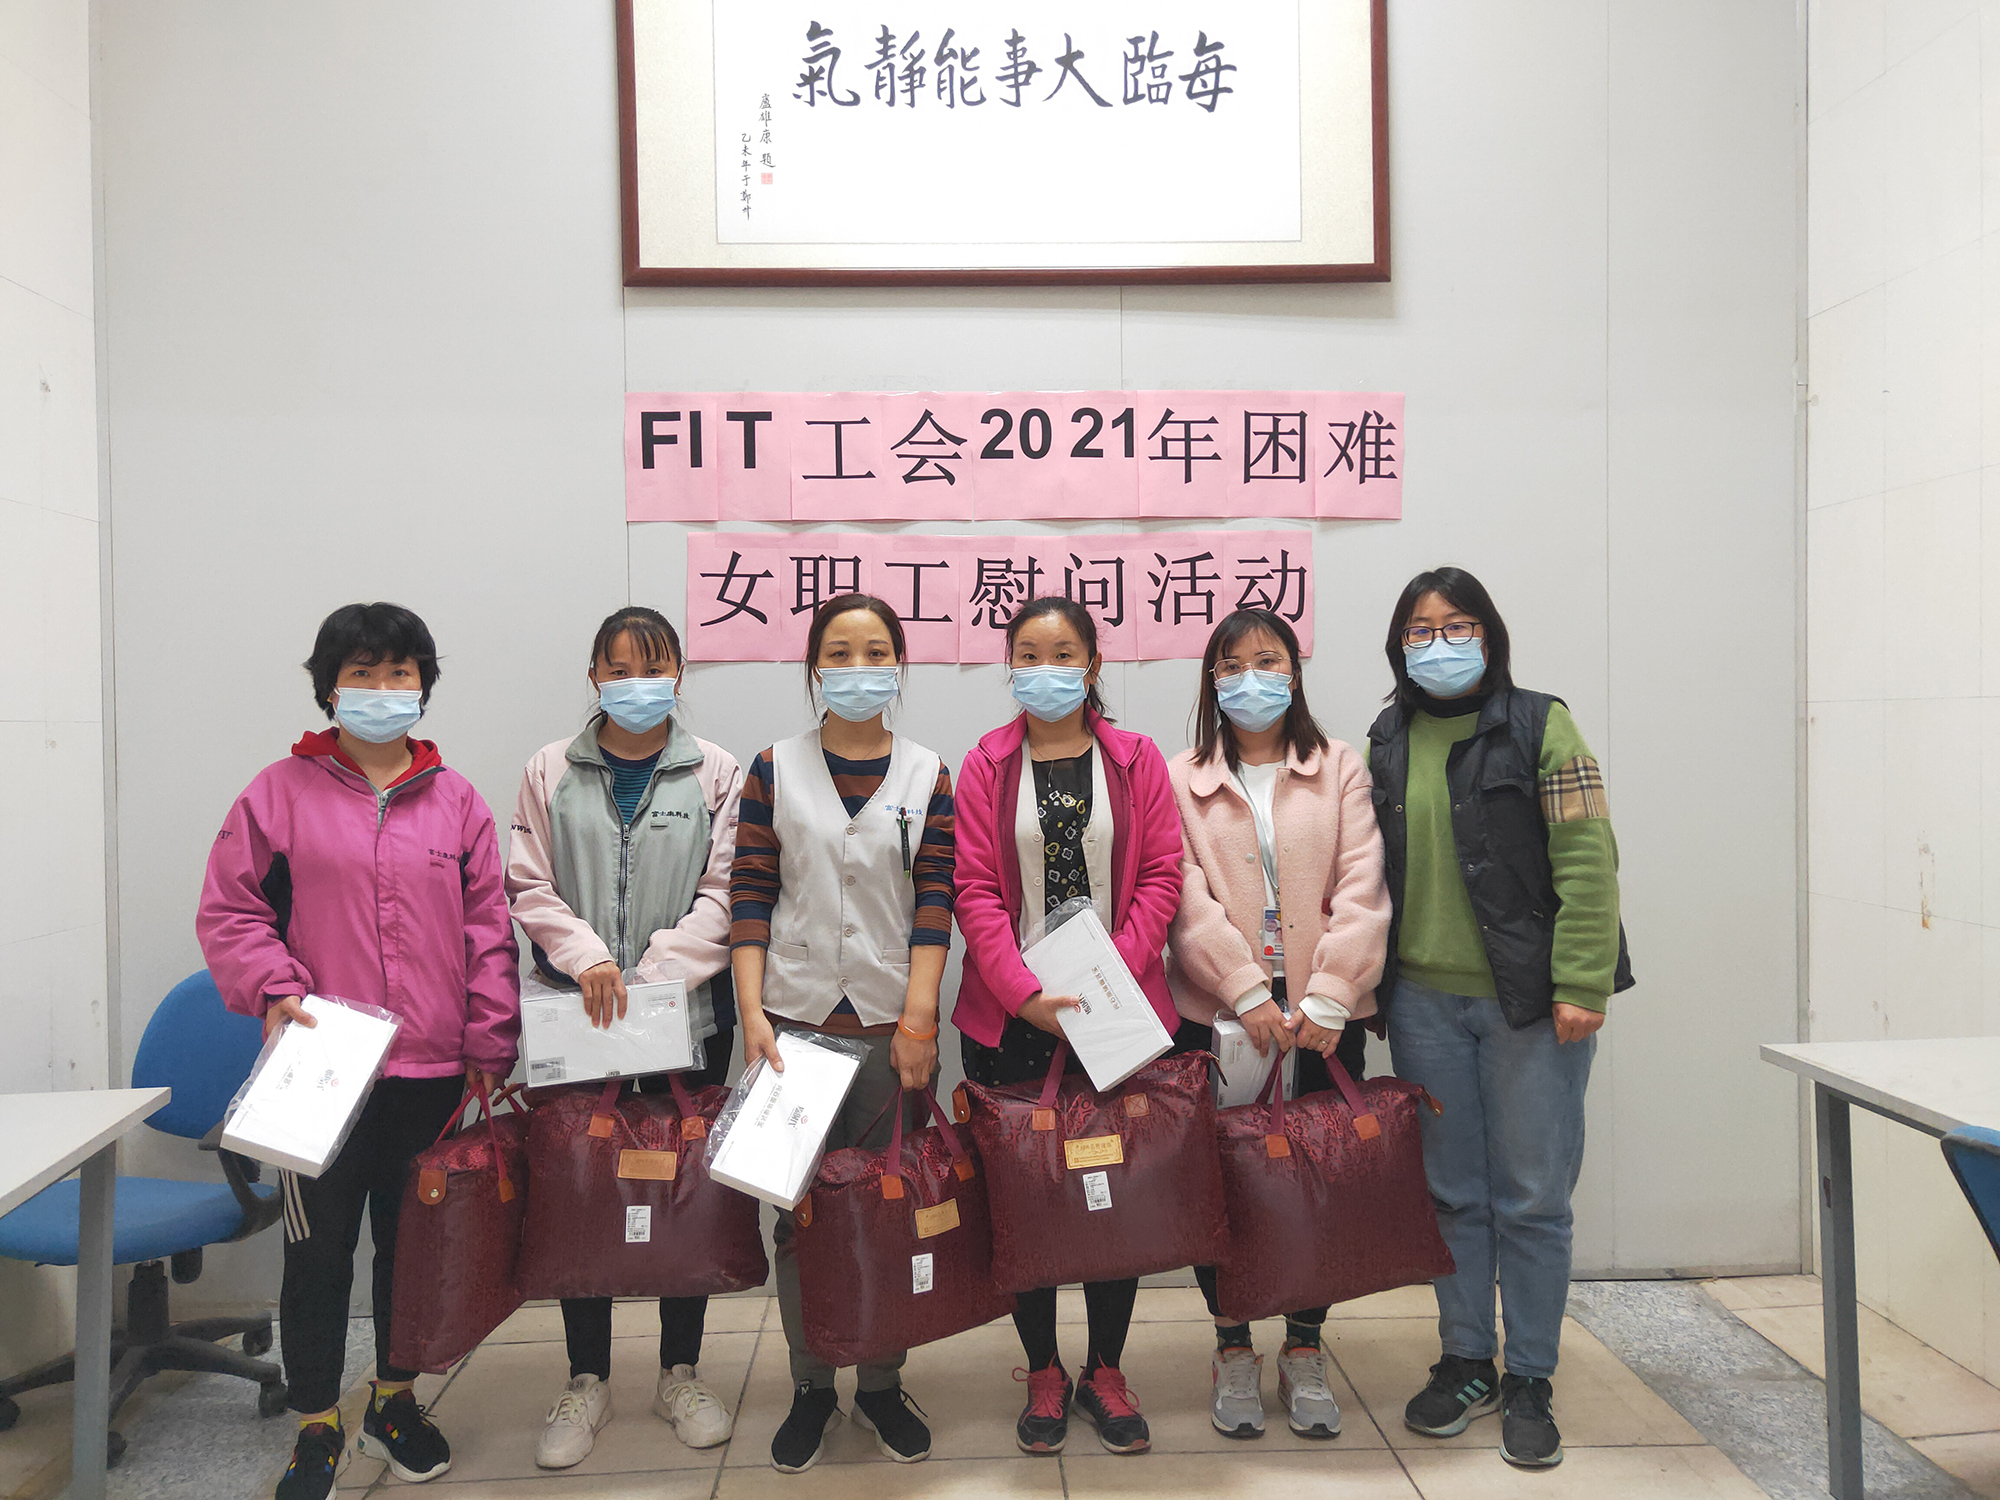 【郑州富士康】FIT工会举办2021年困难女职工慰问活动